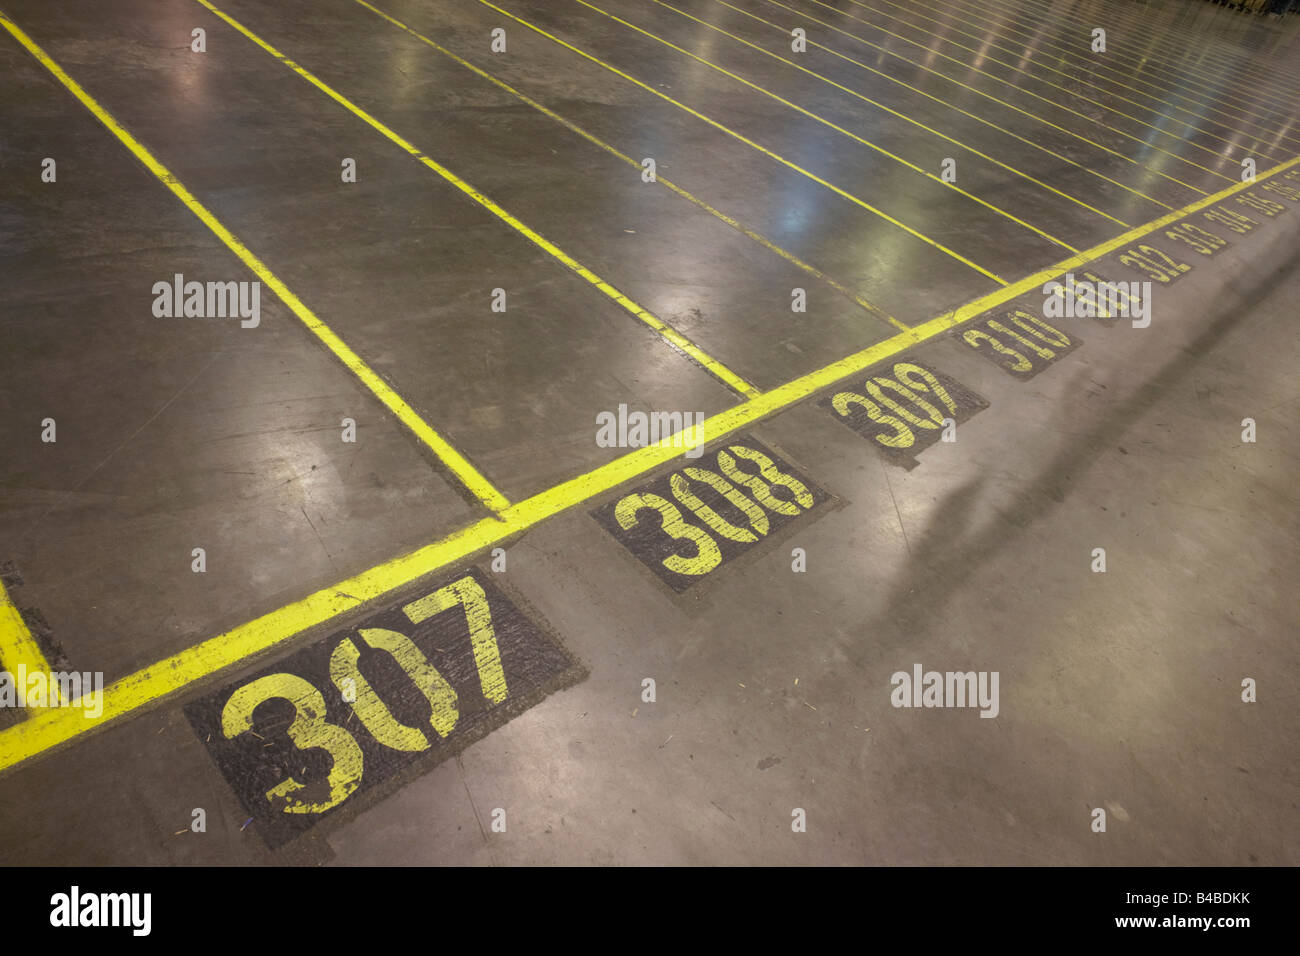 Gelb lackiert Bahnen auf dem Boden der Sainsbury 700.000 Quadratfuß (57, 500sq m) Supermarkt Verkaufslager Waltham Zeitpunkt Stockfoto